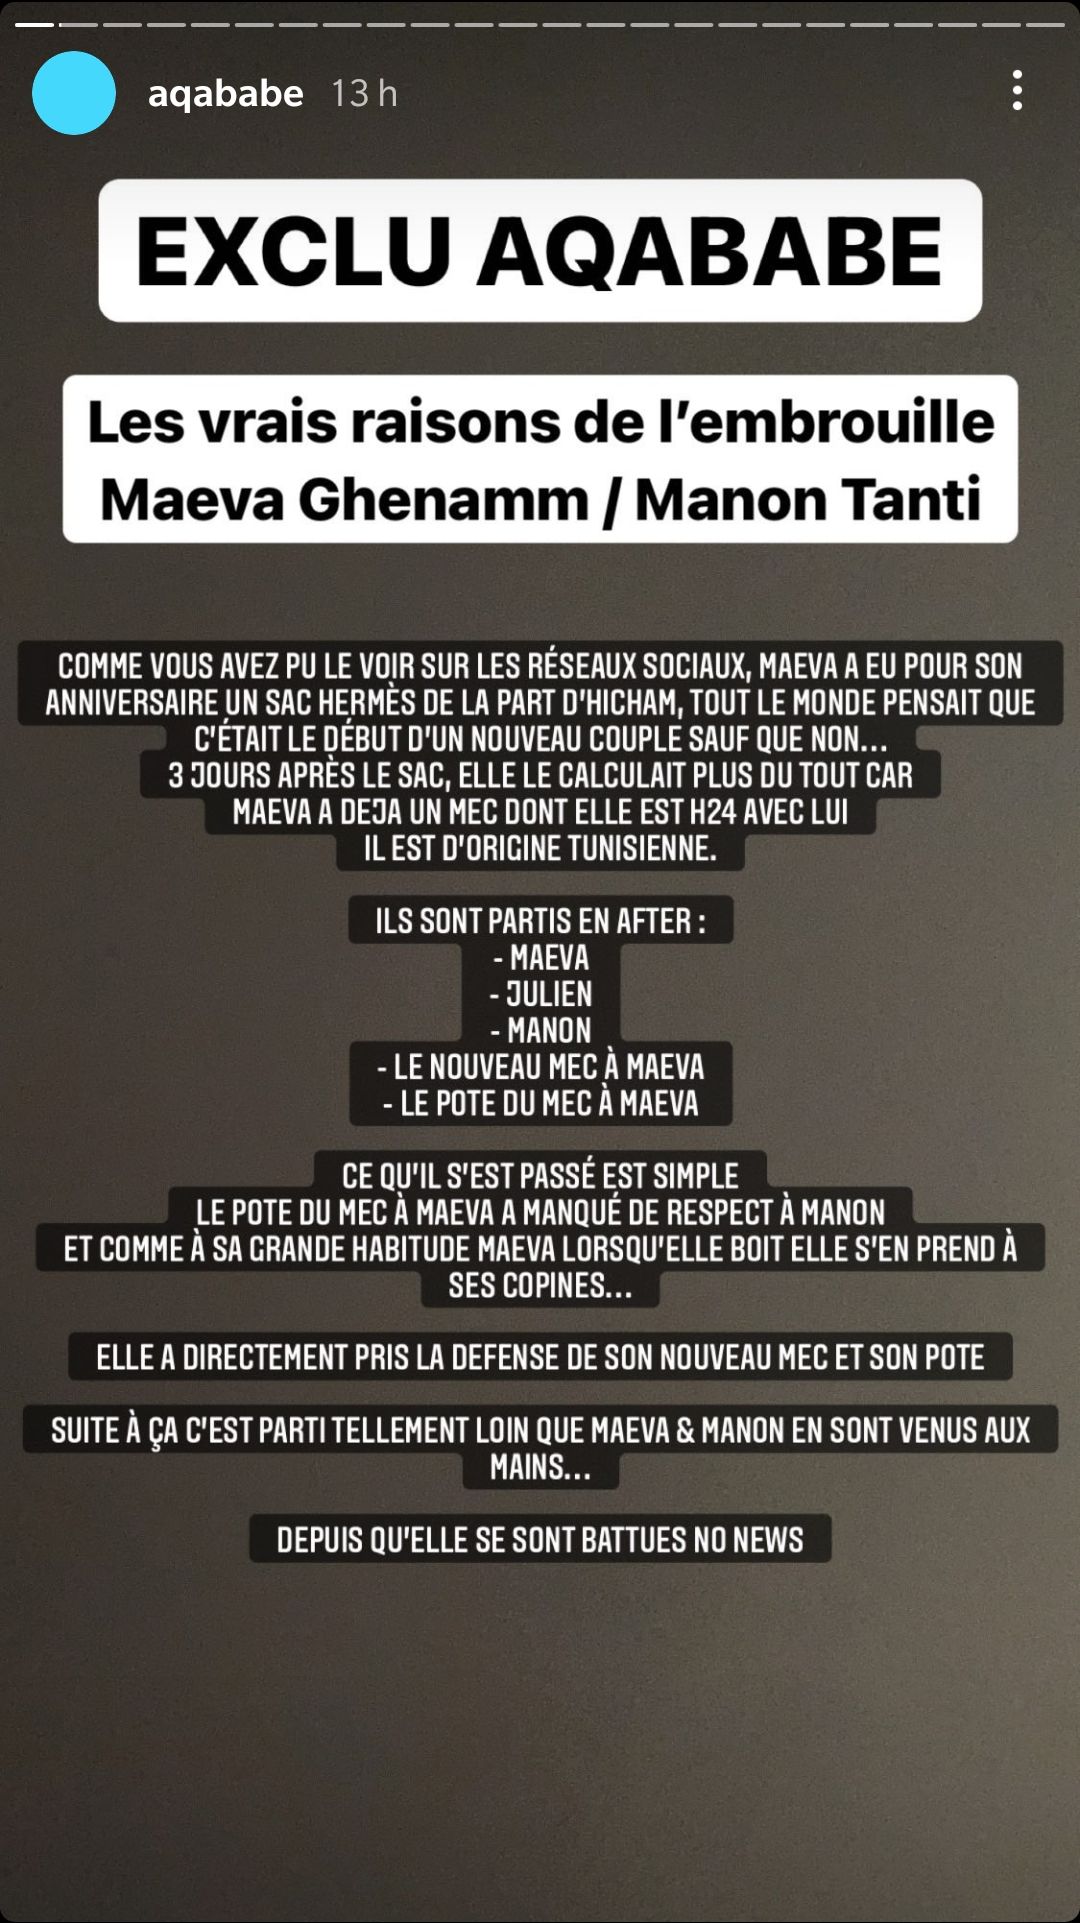  Aqababe dévoile les raisons de l'embrouille entre Maeva Ghennam et Manon Marsault @Instagram